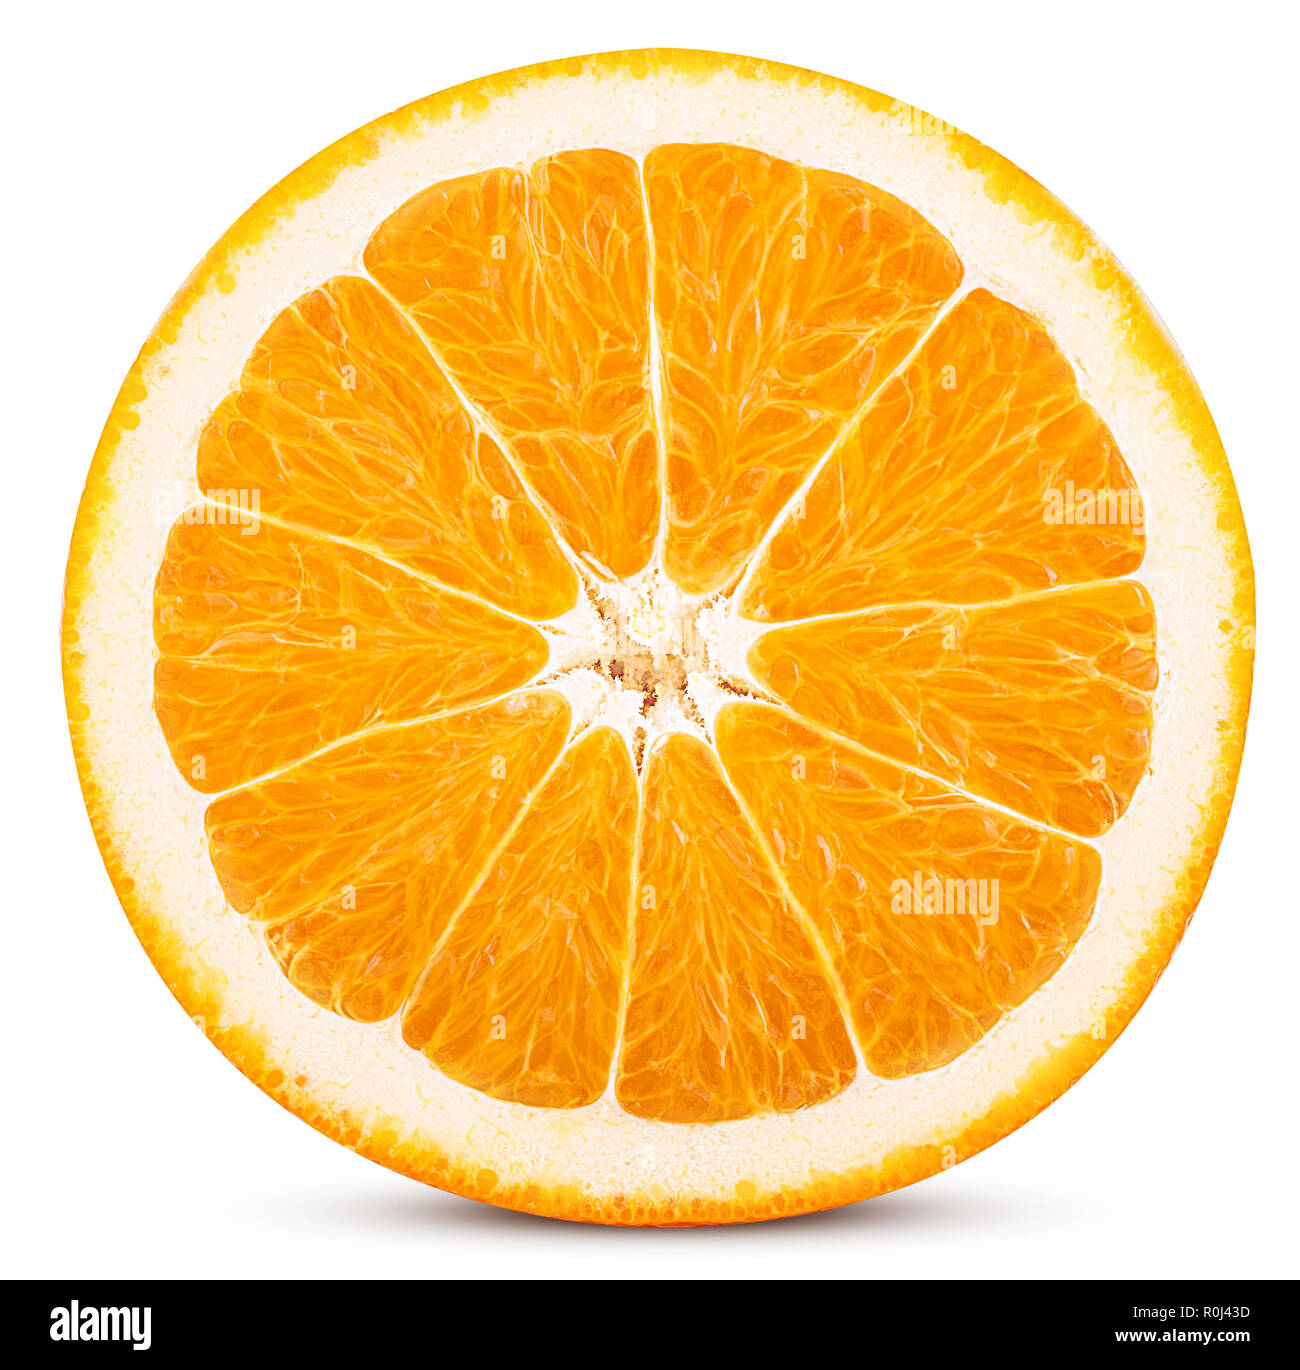 Quả cam cắt đôi hình ảnh chất lượng cao - Nếu bạn là một người yêu thích nhiếp ảnh hoặc chỉ muốn tìm hiểu chi tiết hơn về quả cam, hãy xem hình ảnh của quả cam được cắt đôi với chất lượng cao để thấy rõ những chi tiết độc đáo của trái cây này.